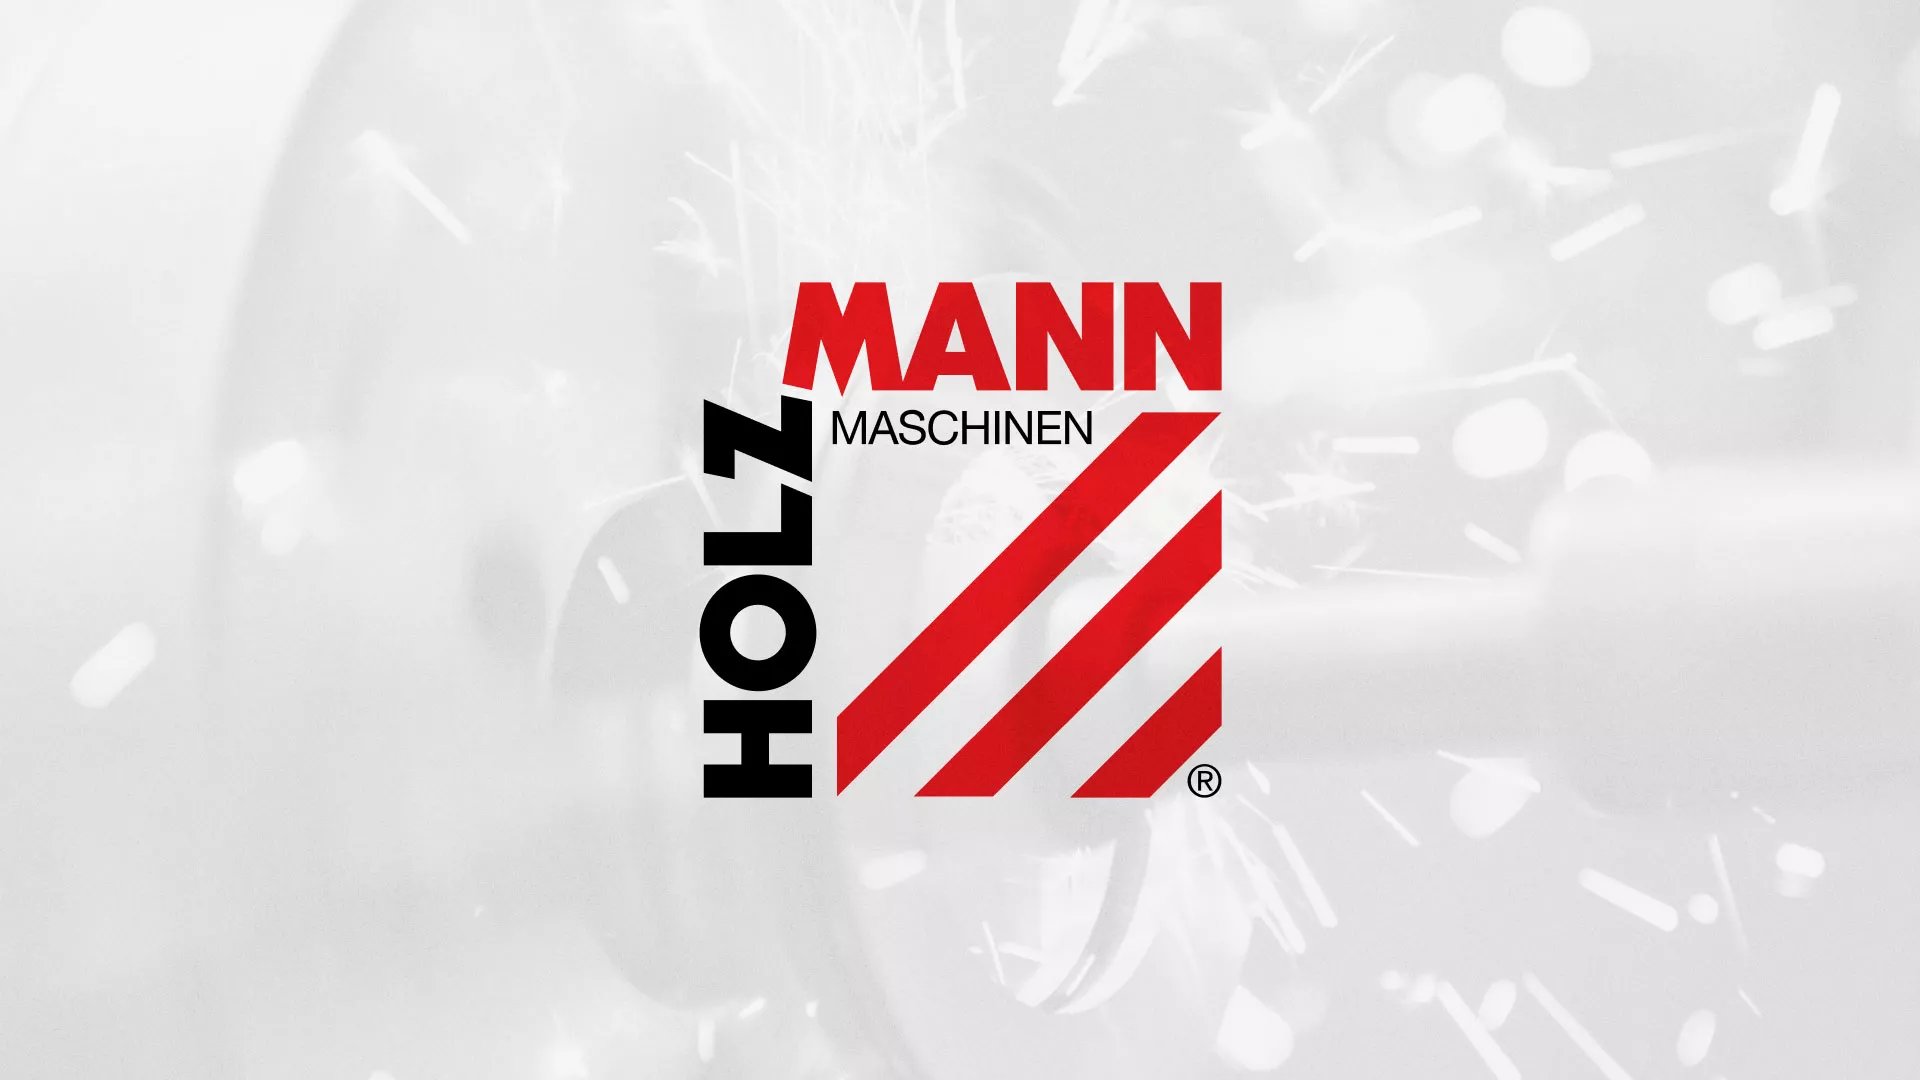 Создание сайта компании «HOLZMANN Maschinen GmbH» в Лисках